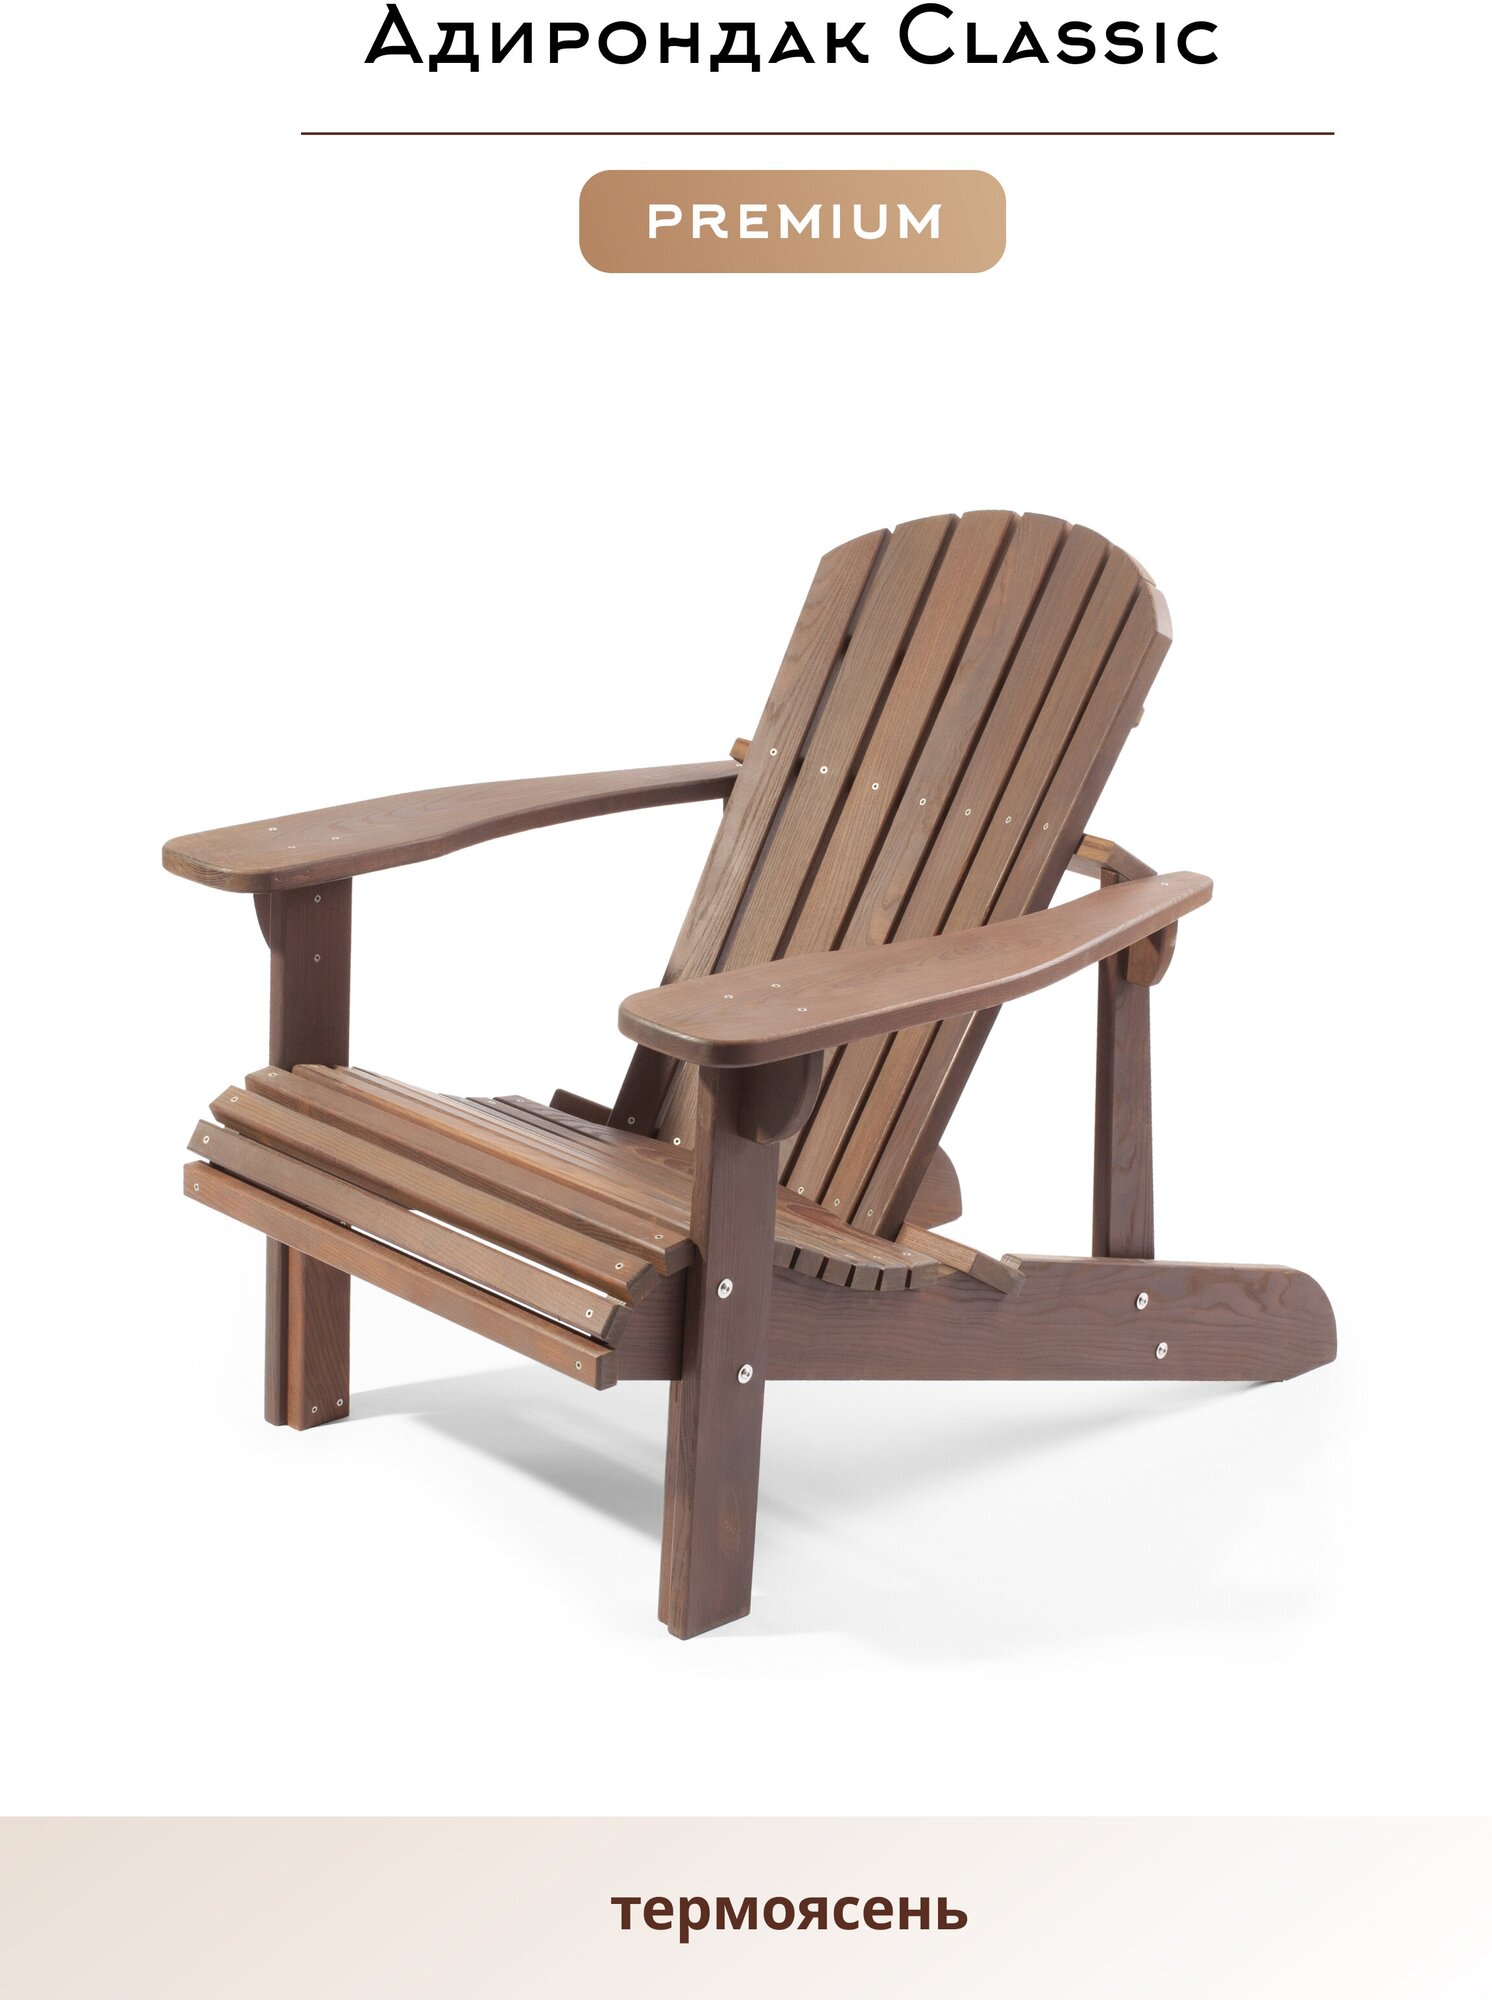 Кресло Адирондак, Кресло садовое из дерева